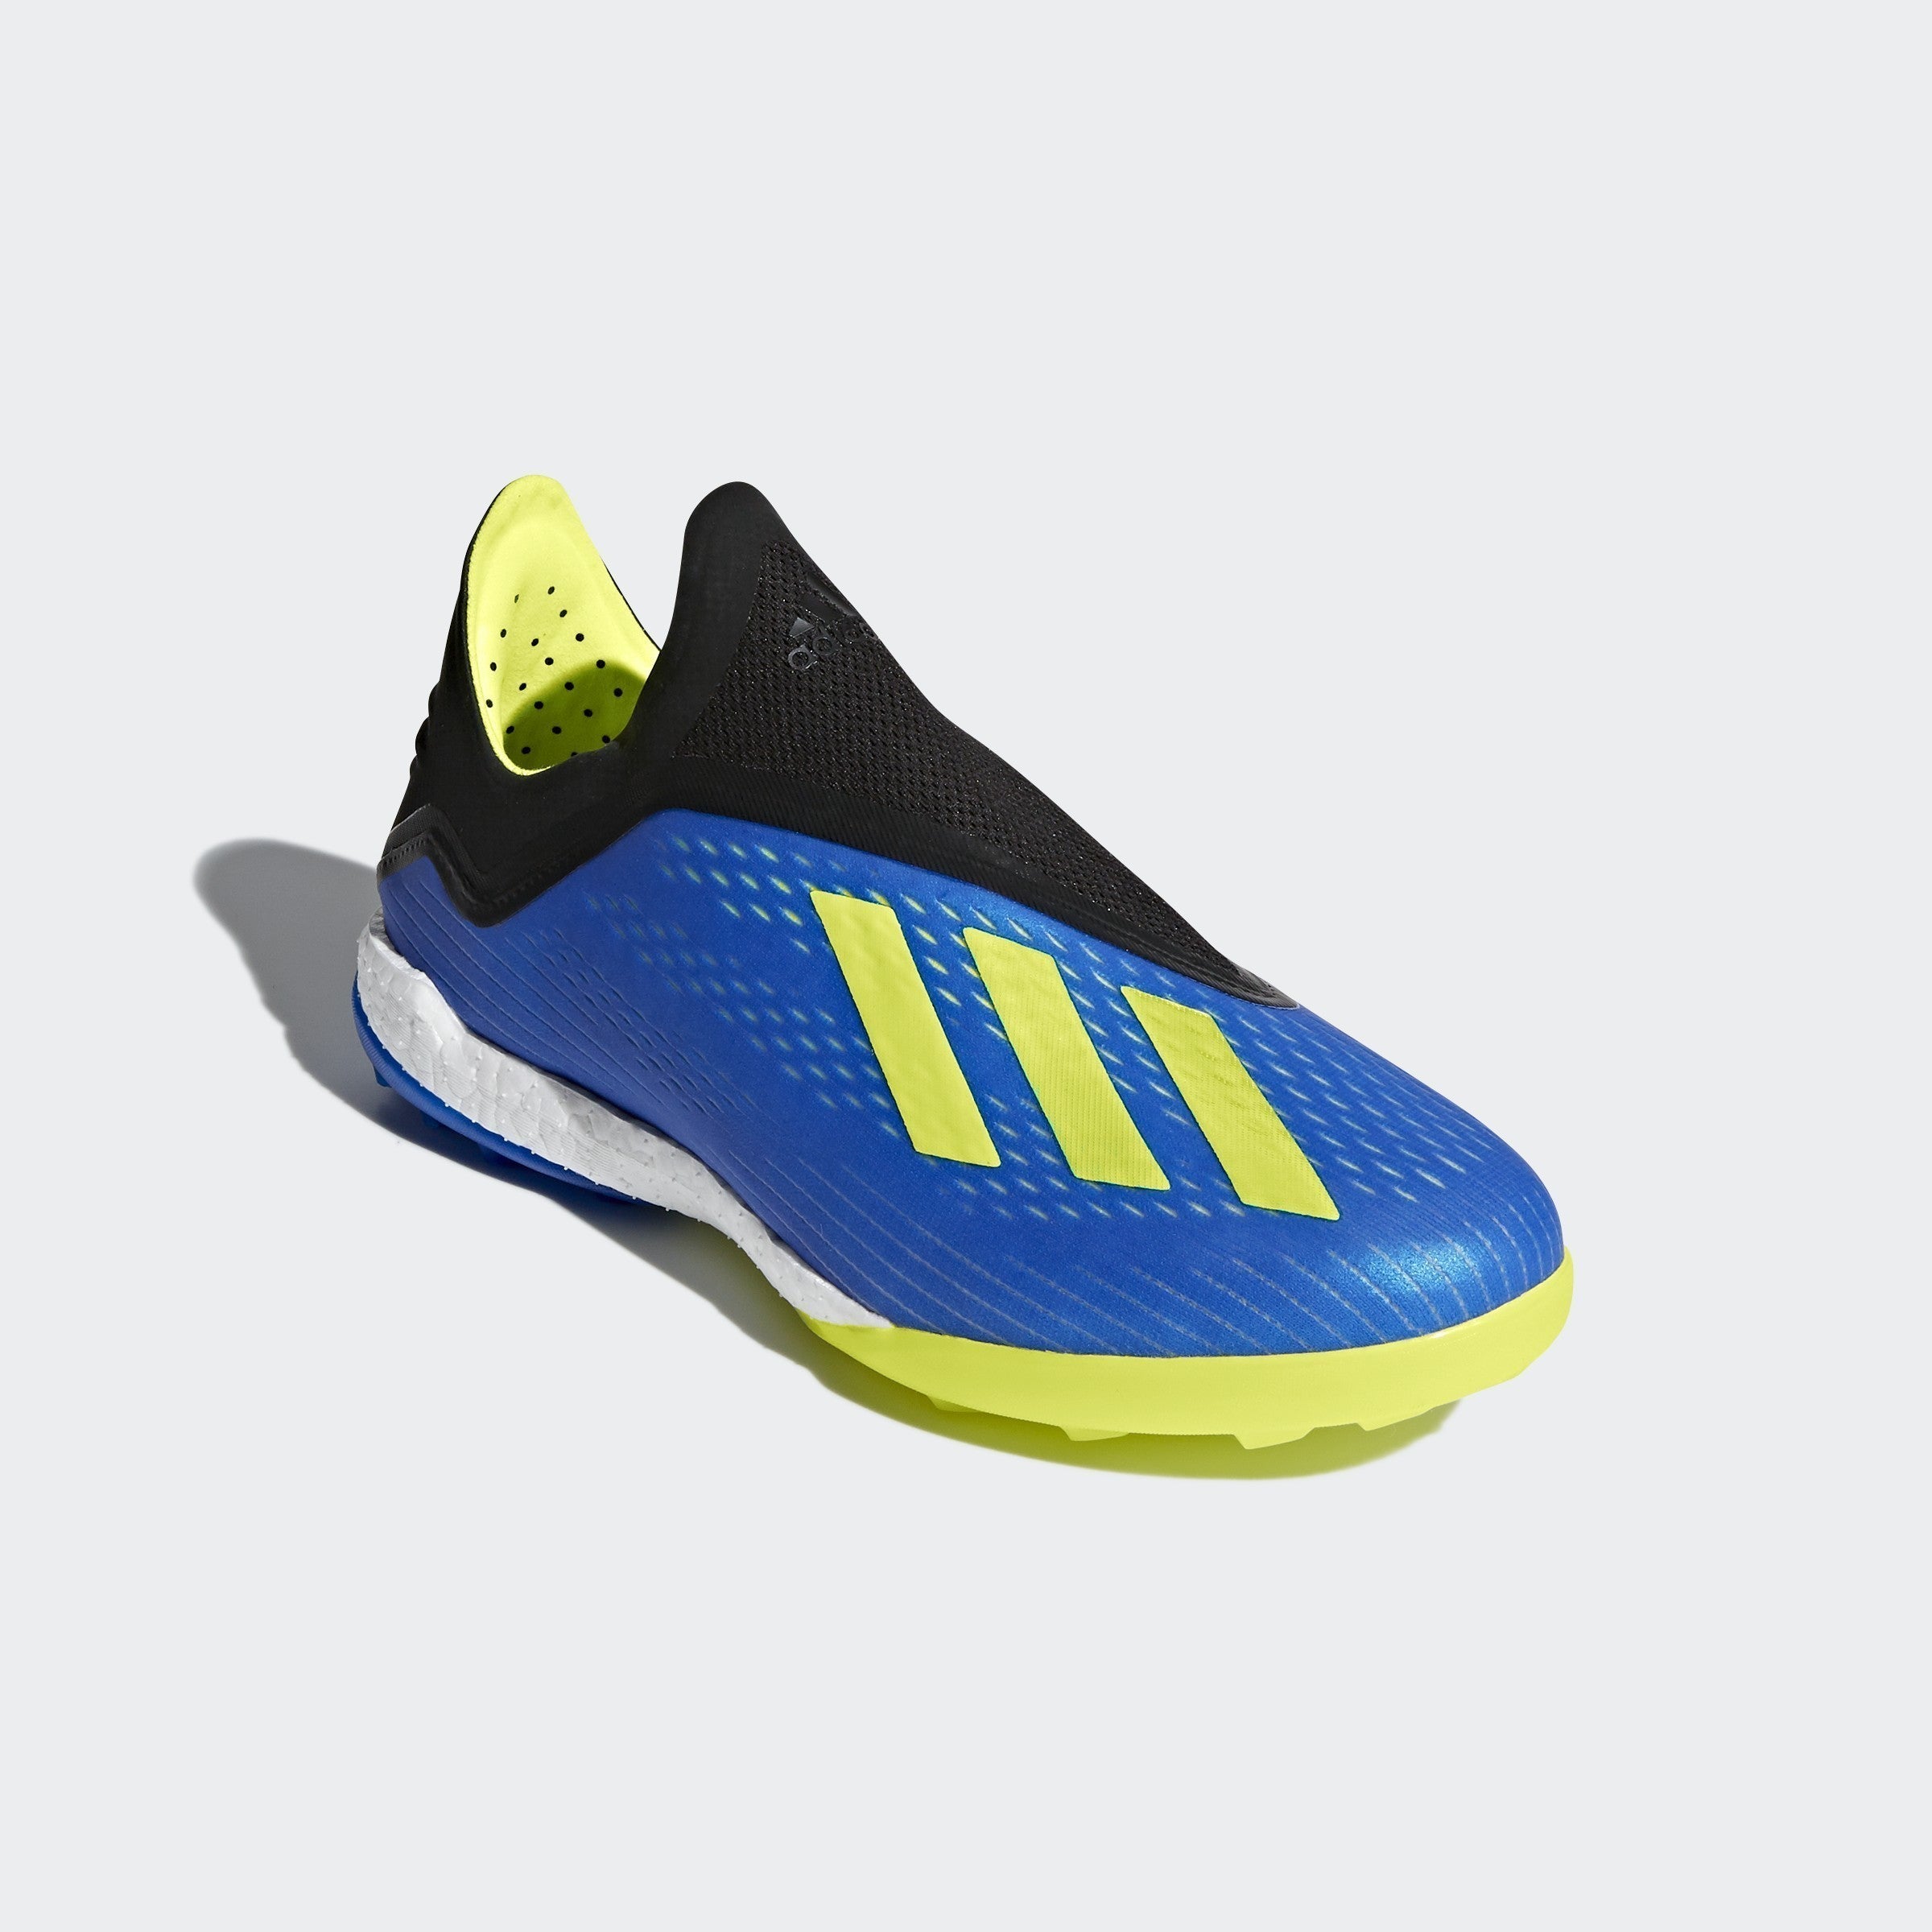 Men's X 18 + Soccer Shoes - Blue Solar/Yellow Core/Black